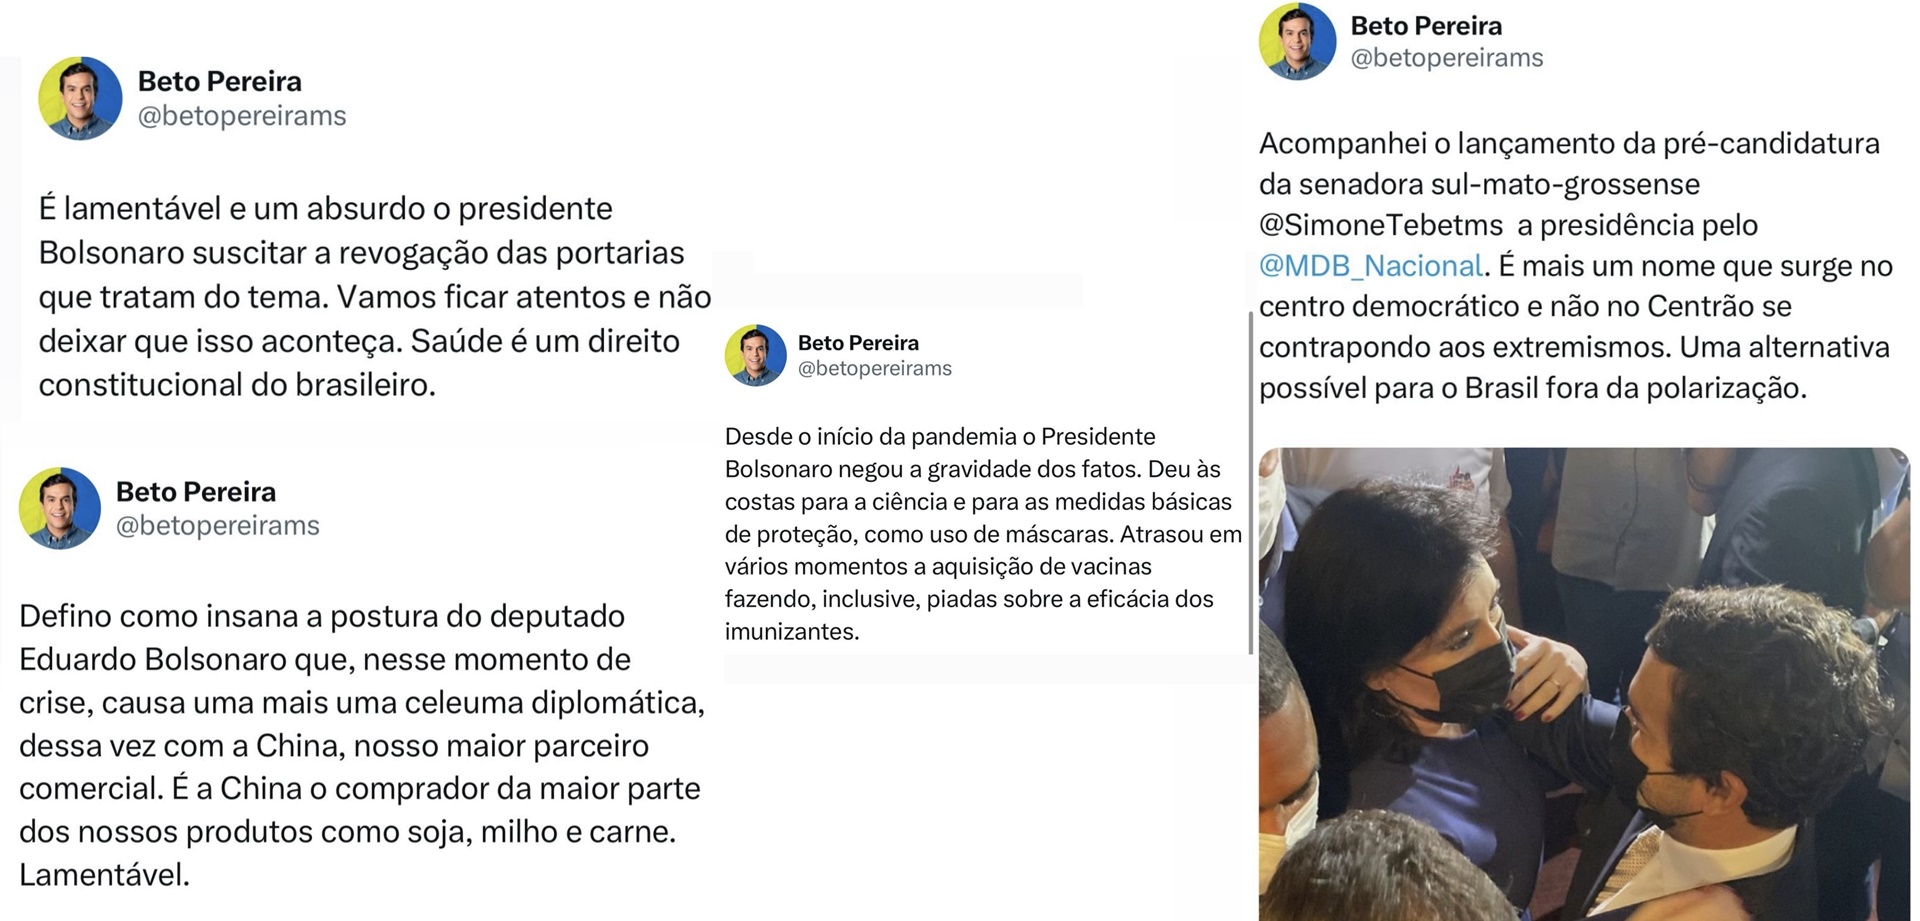 Tucano apaga críticas a Bolsonaro enquanto busca apoio do PL para eleição 2